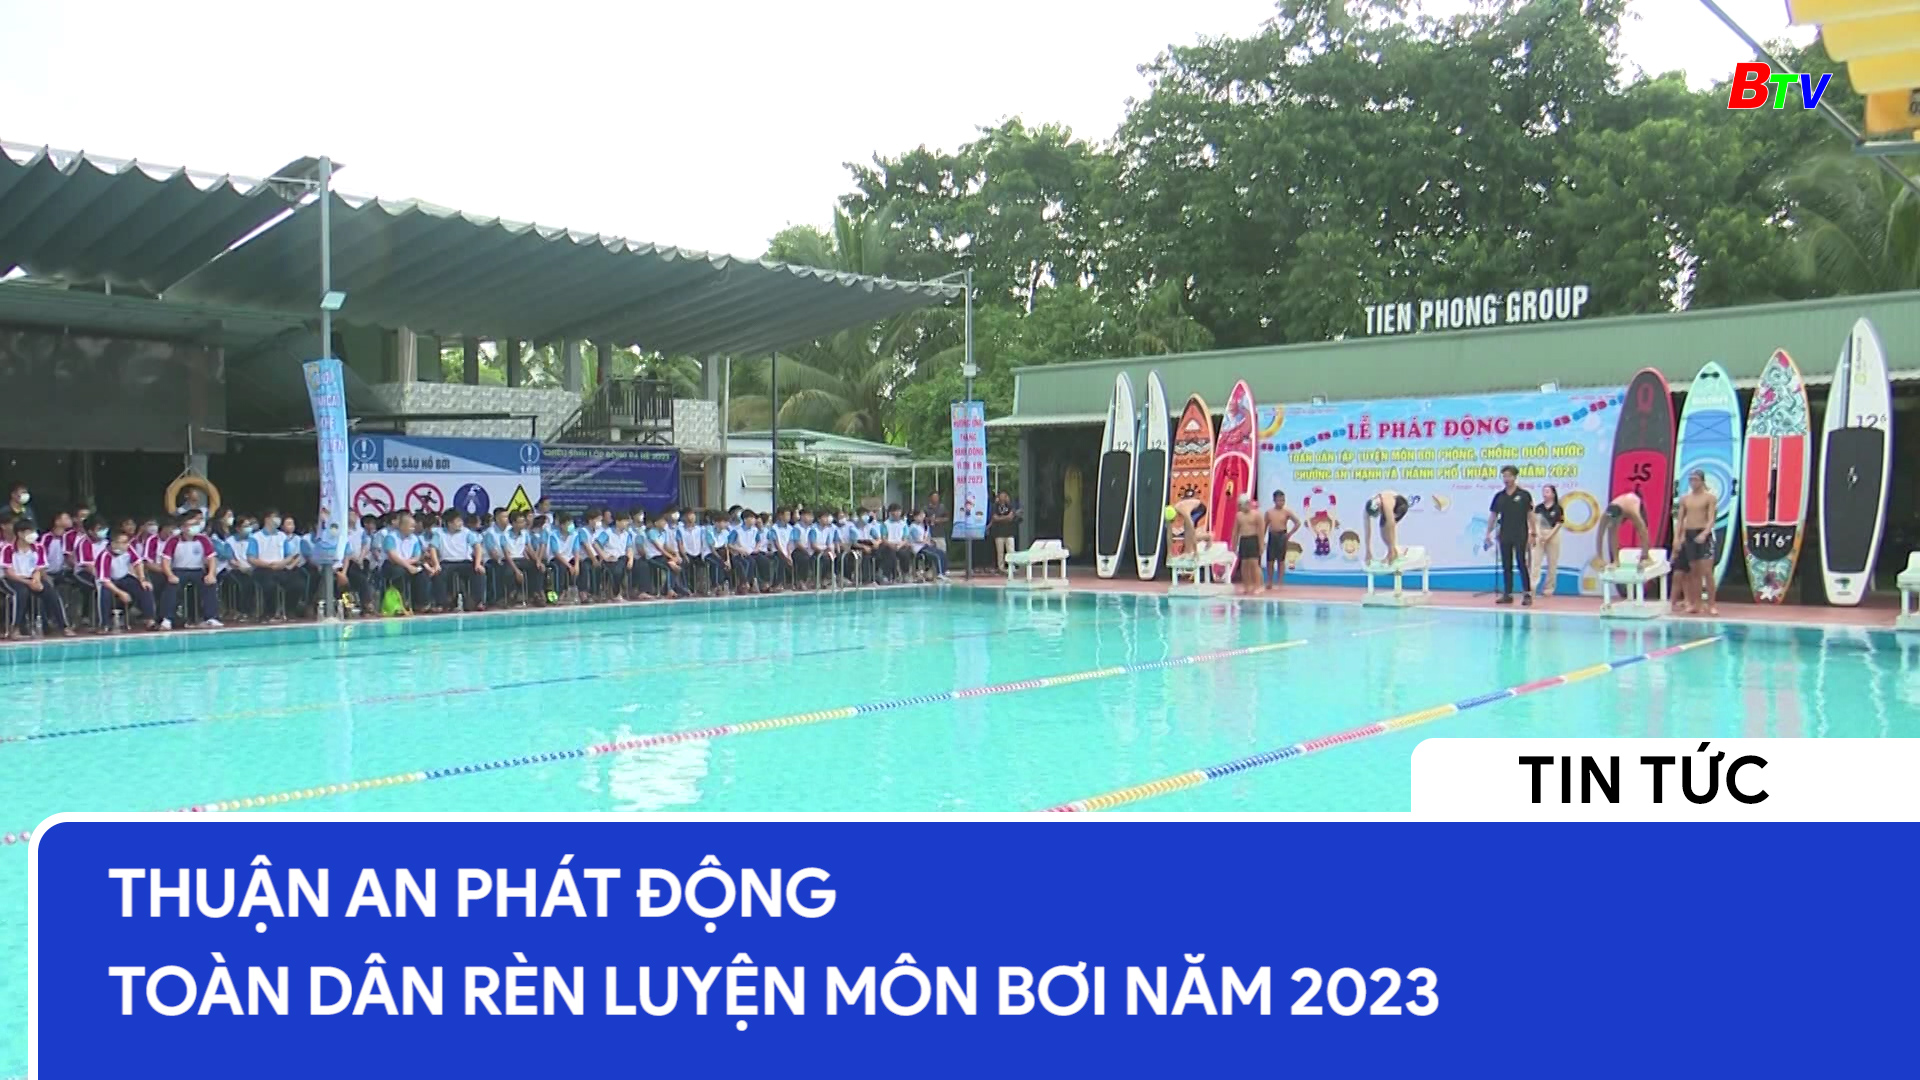 Thuận An phát động toàn dân rèn luyện môn bơi năm 2023